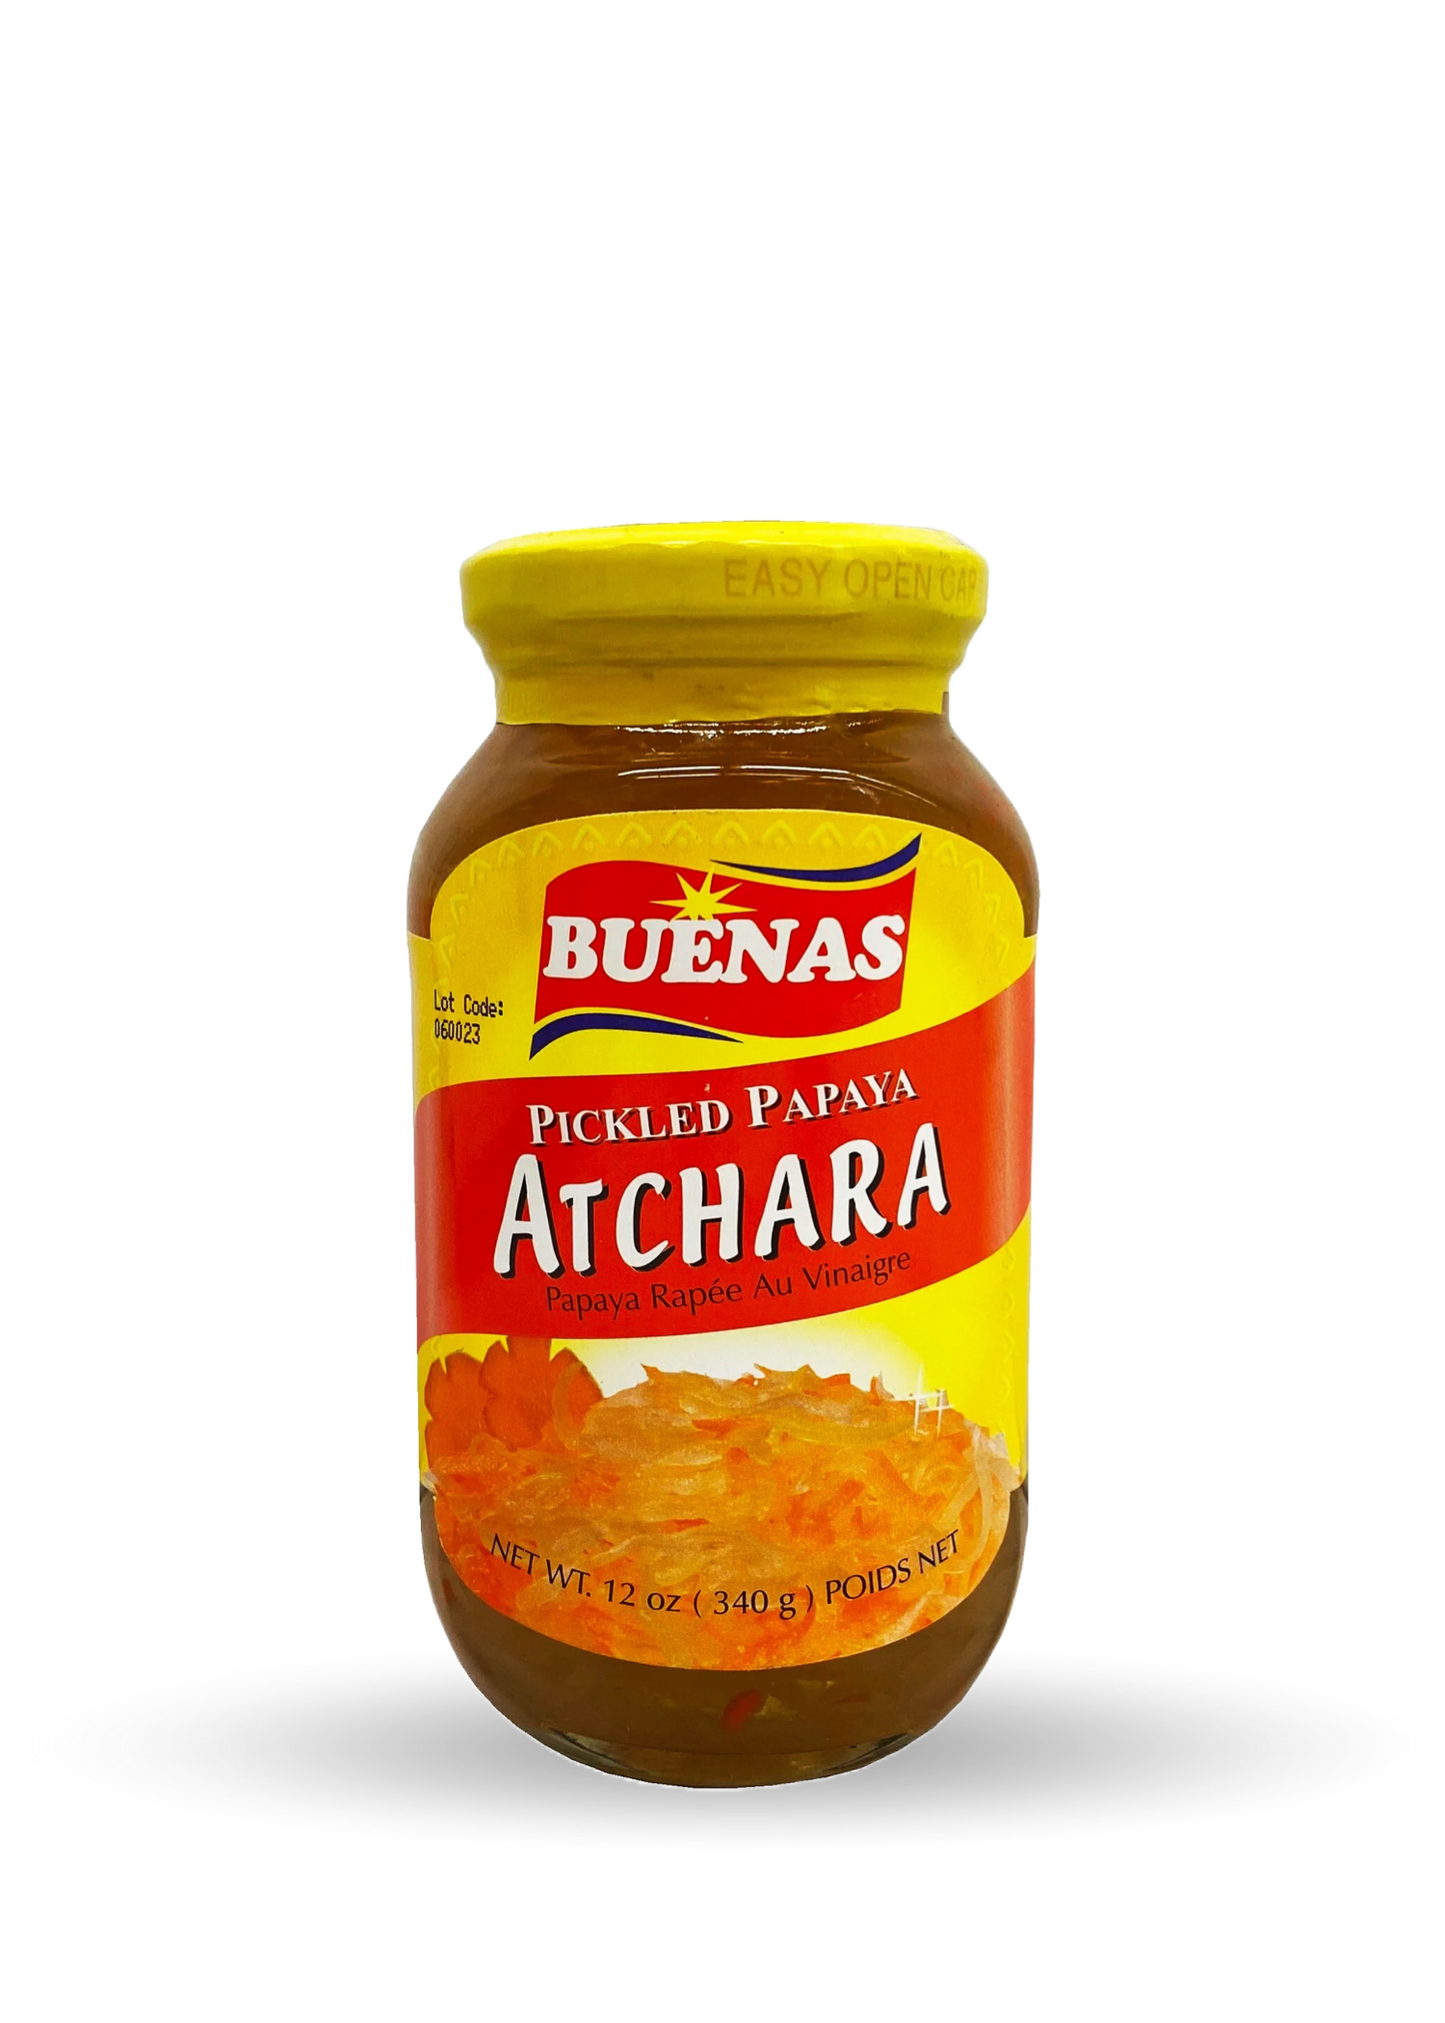 Buenas | Atchara | Pickled Papaya